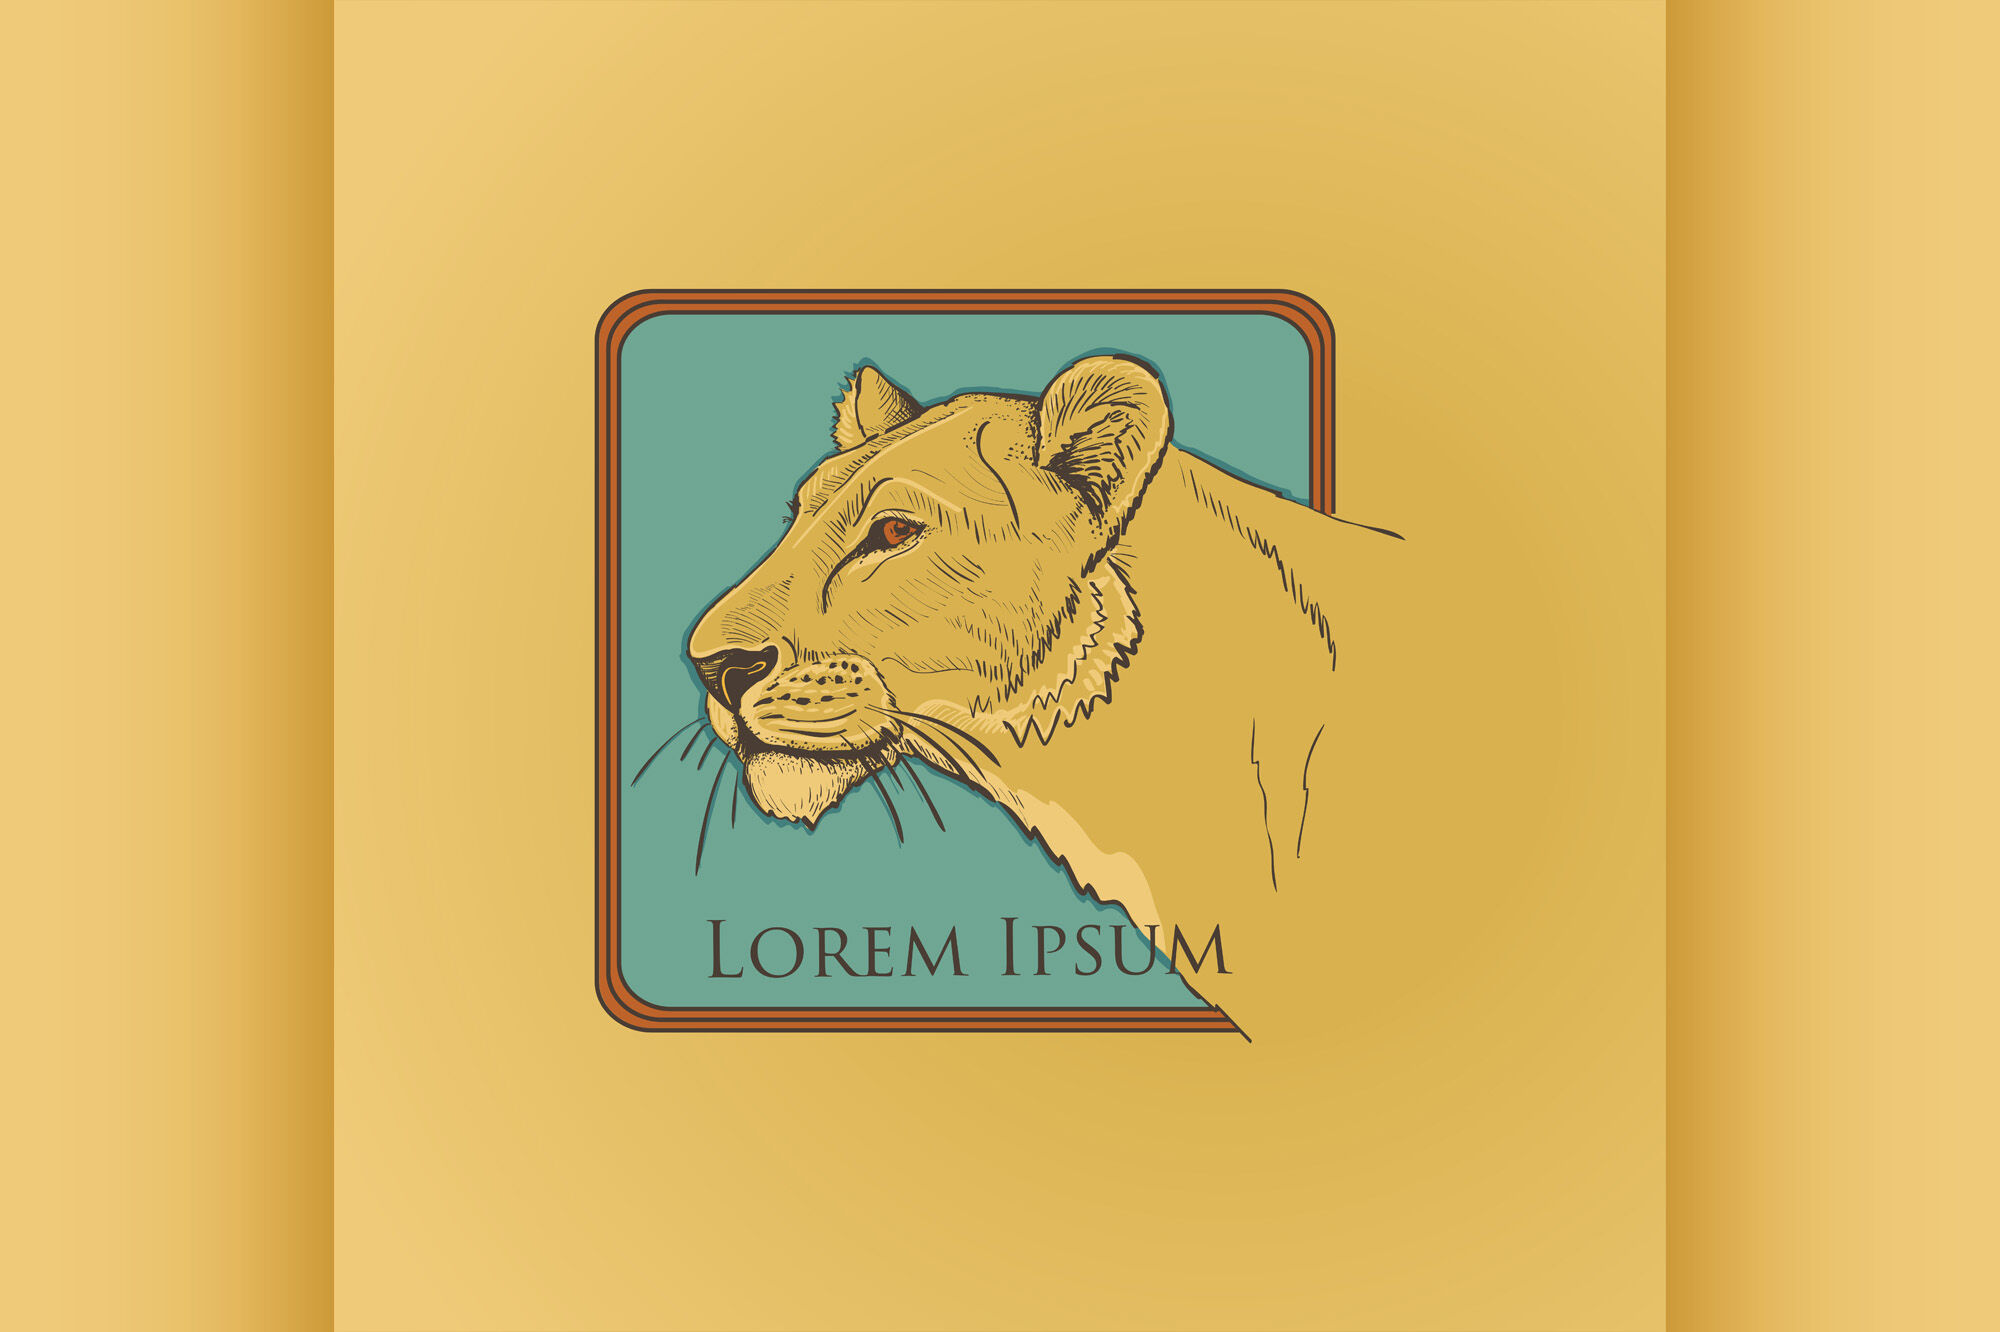 animal planet logo